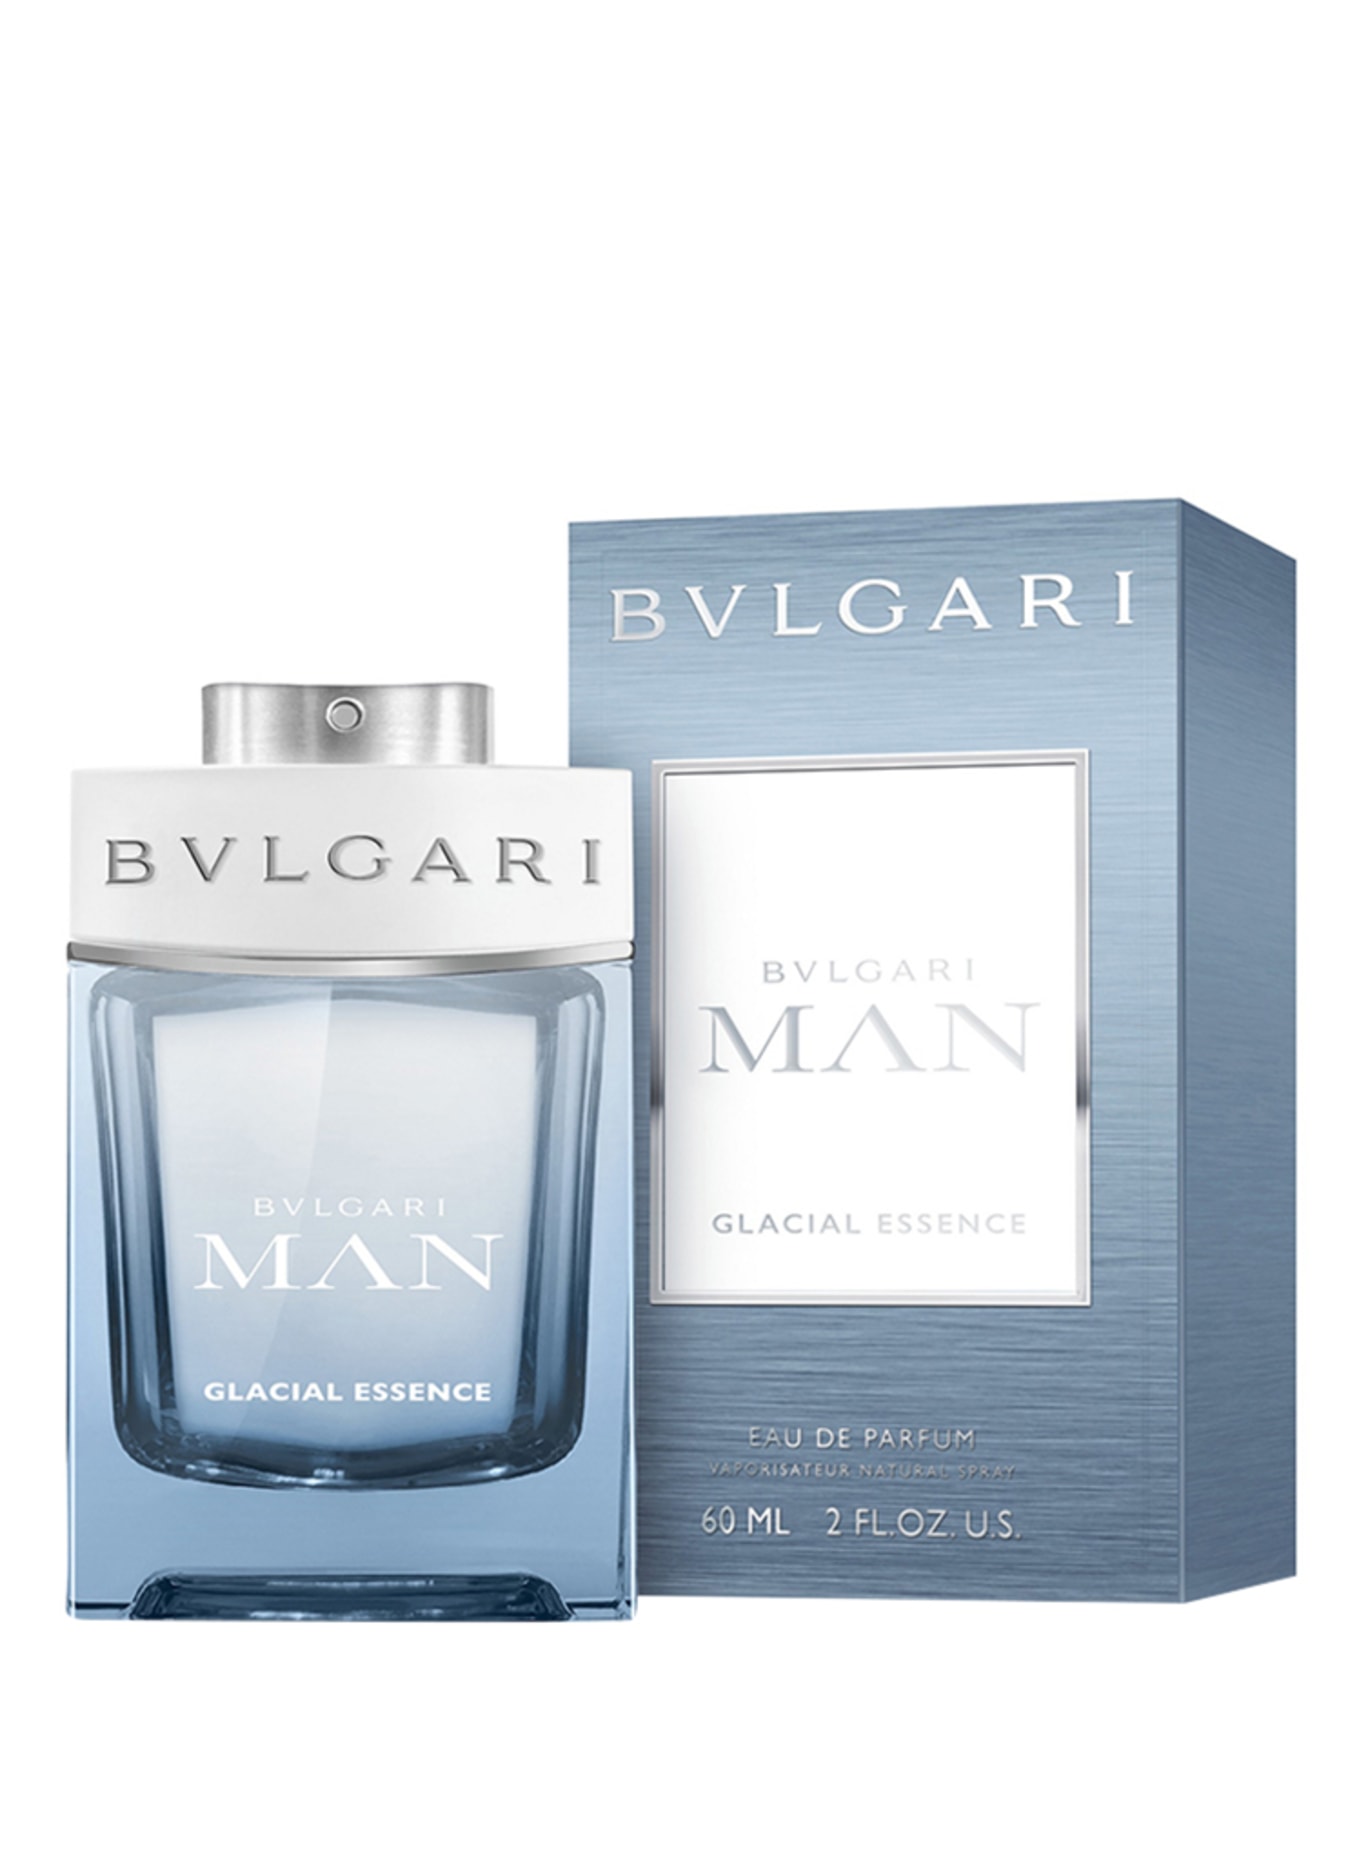 BVLGARI Fragrances GLACIAL ESSENCE (Obrázek 2)